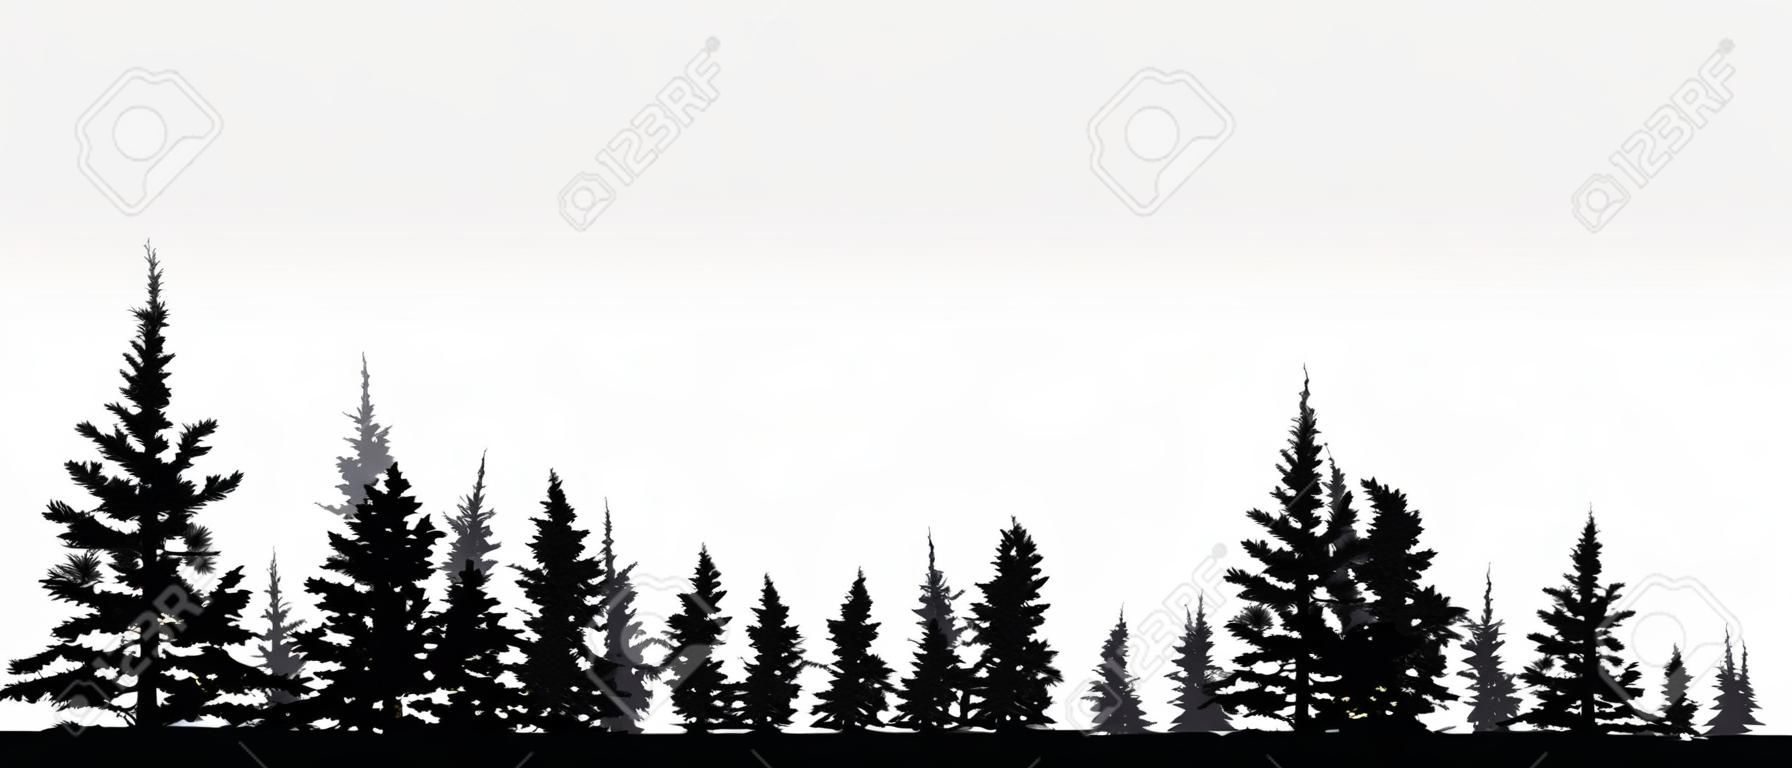 Forêt, conifères, fond de vecteur de silhouette. Arbre, sapin, sapin de Noël, épicéa, pin